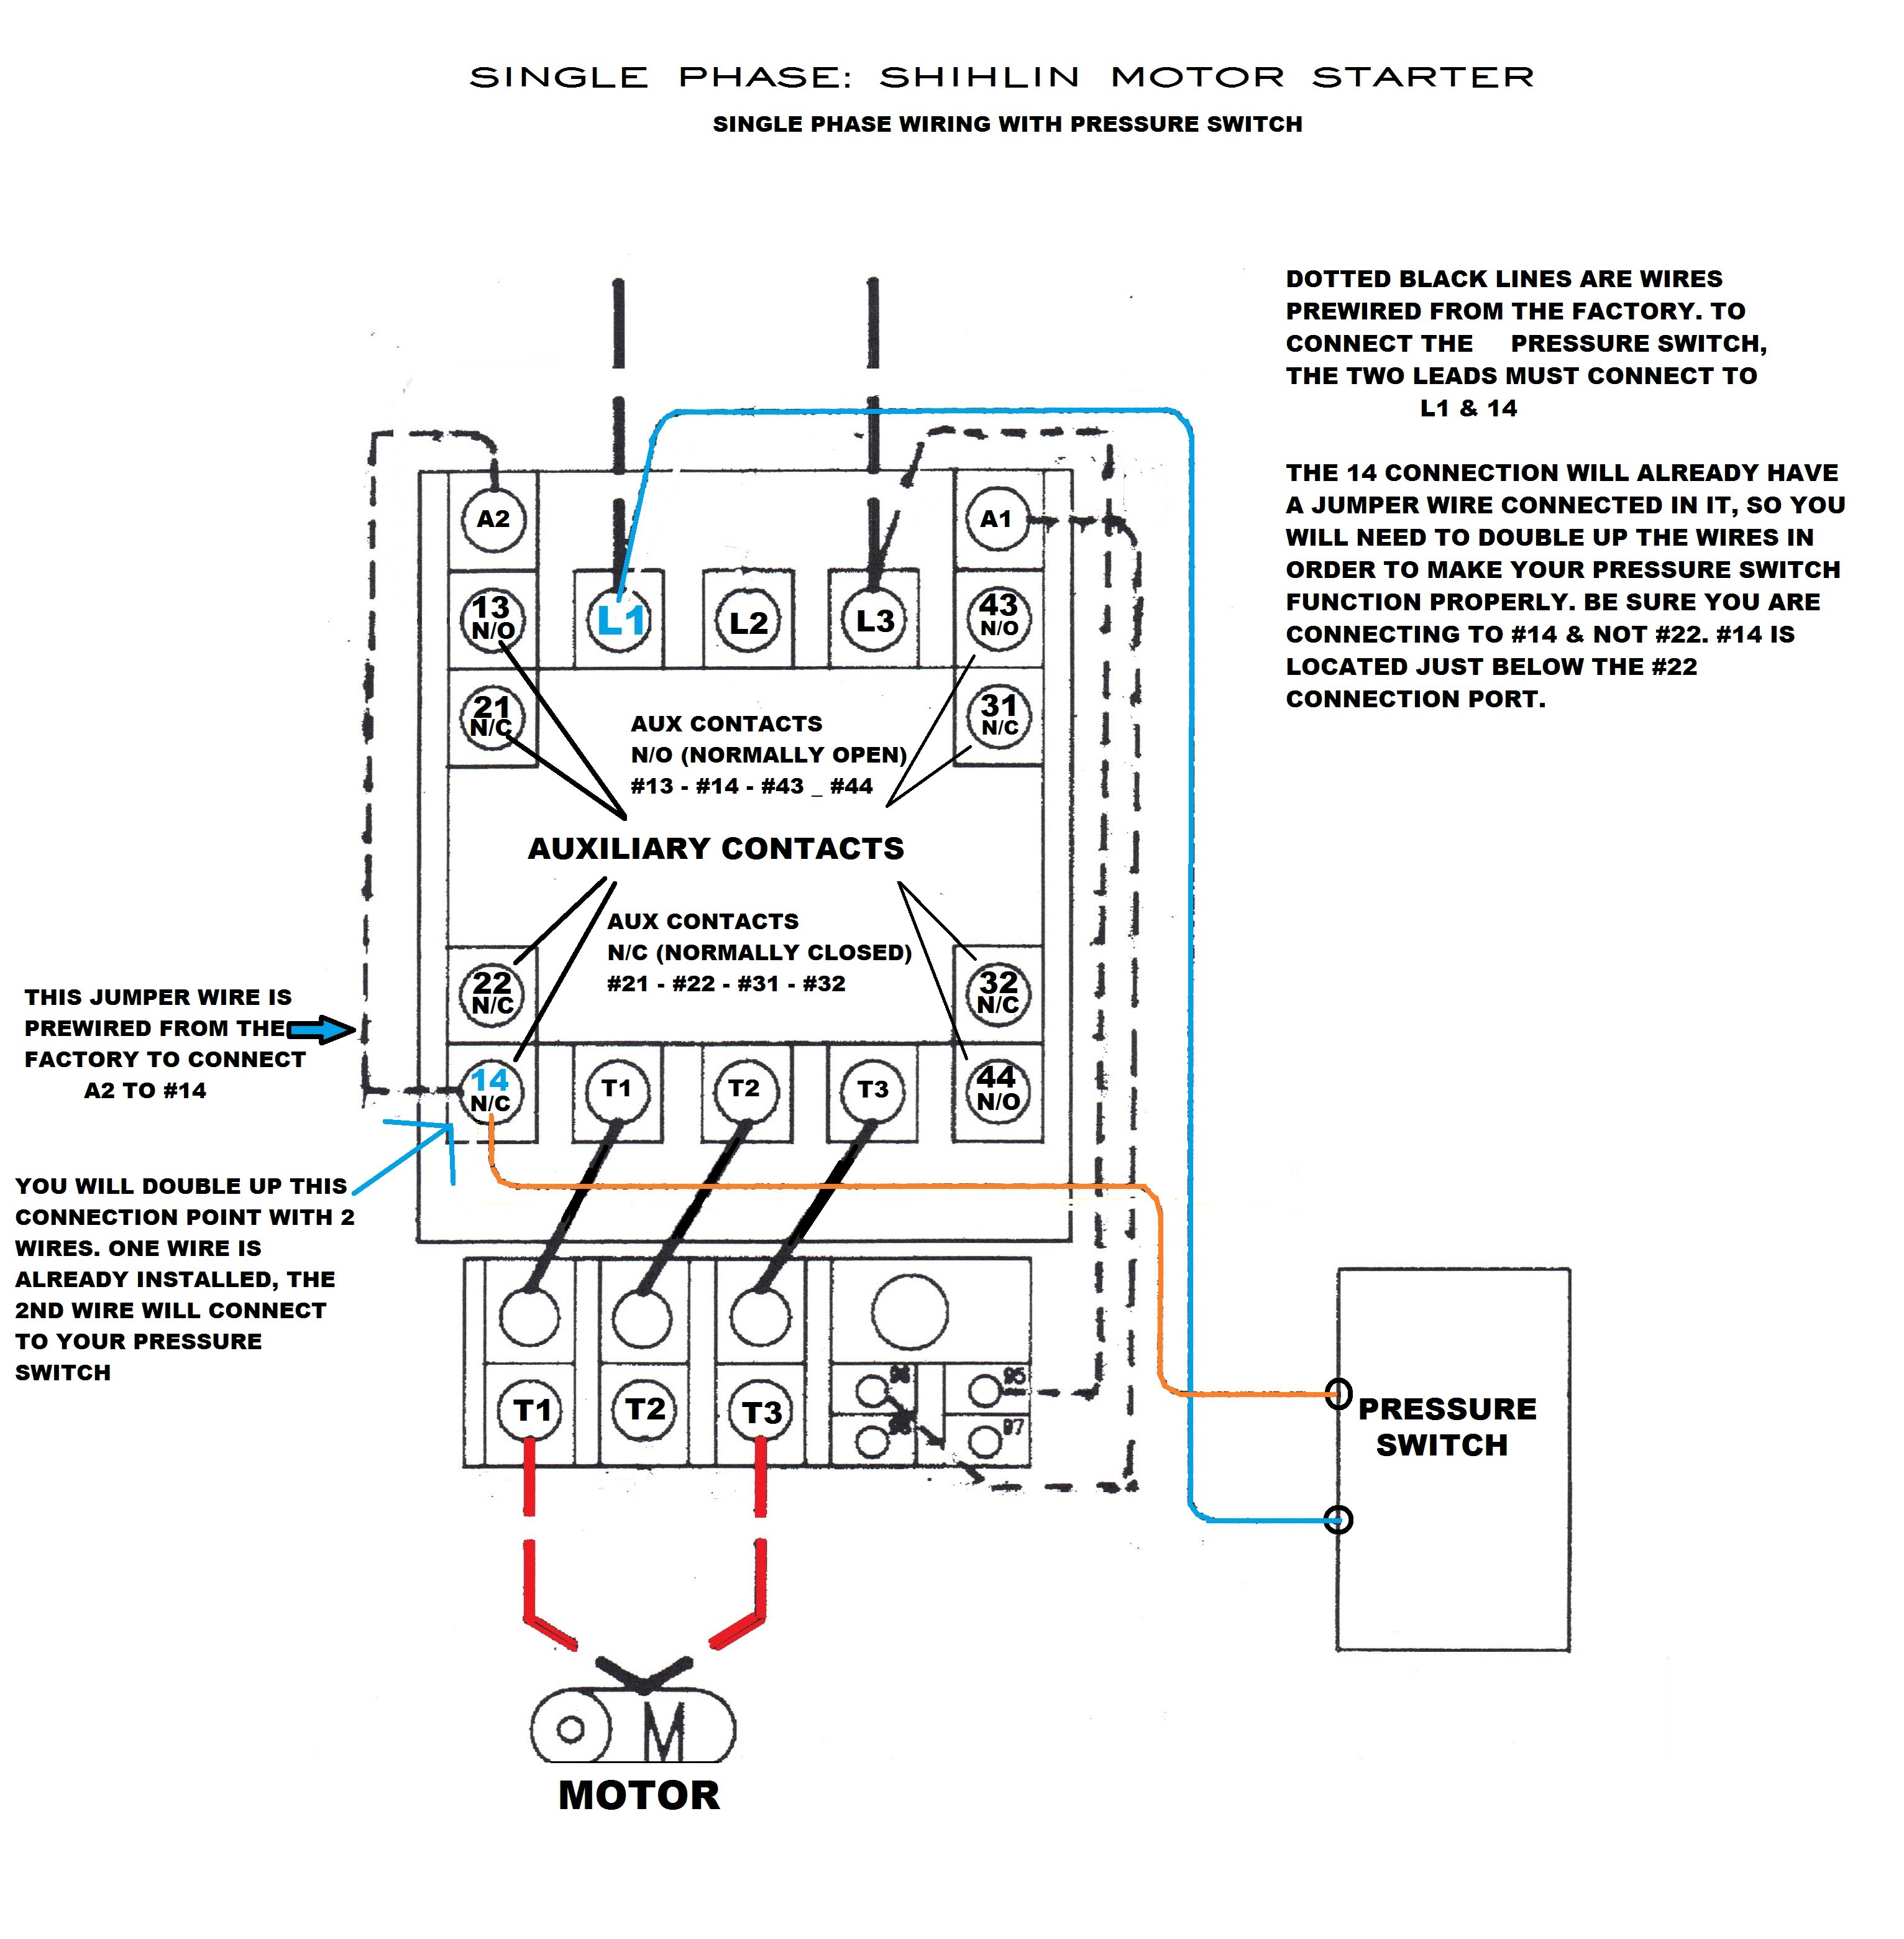 Fresh Square D Air Compressor Pressure Switch Wiring Diagram And New - Air Compressor Pressure Switch Wiring Diagram